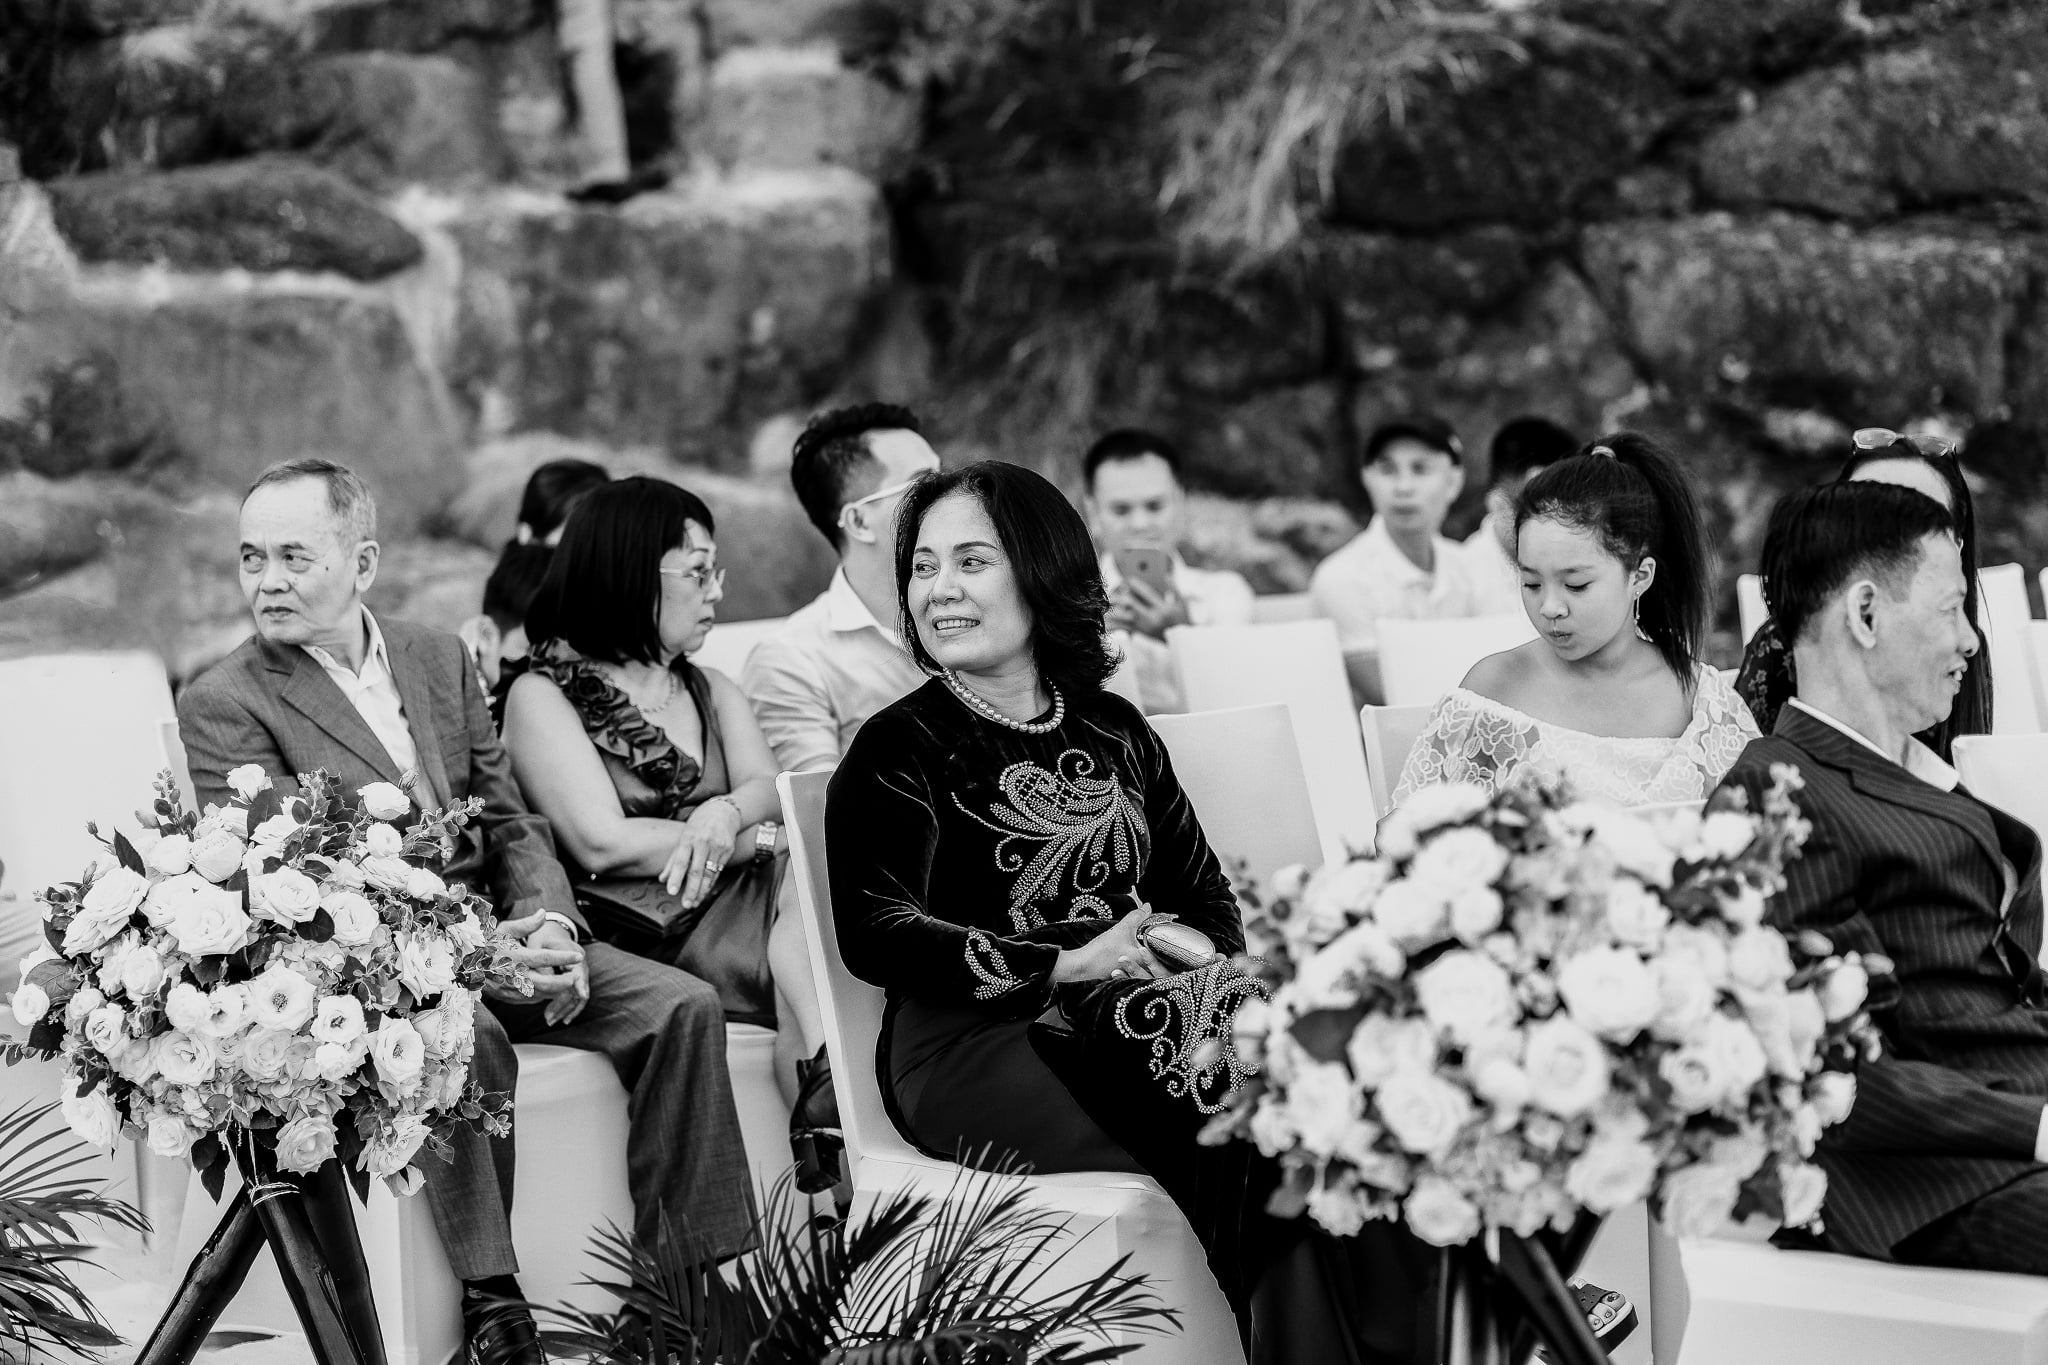 The Wedding Day | Tuan & Trang at Amiana